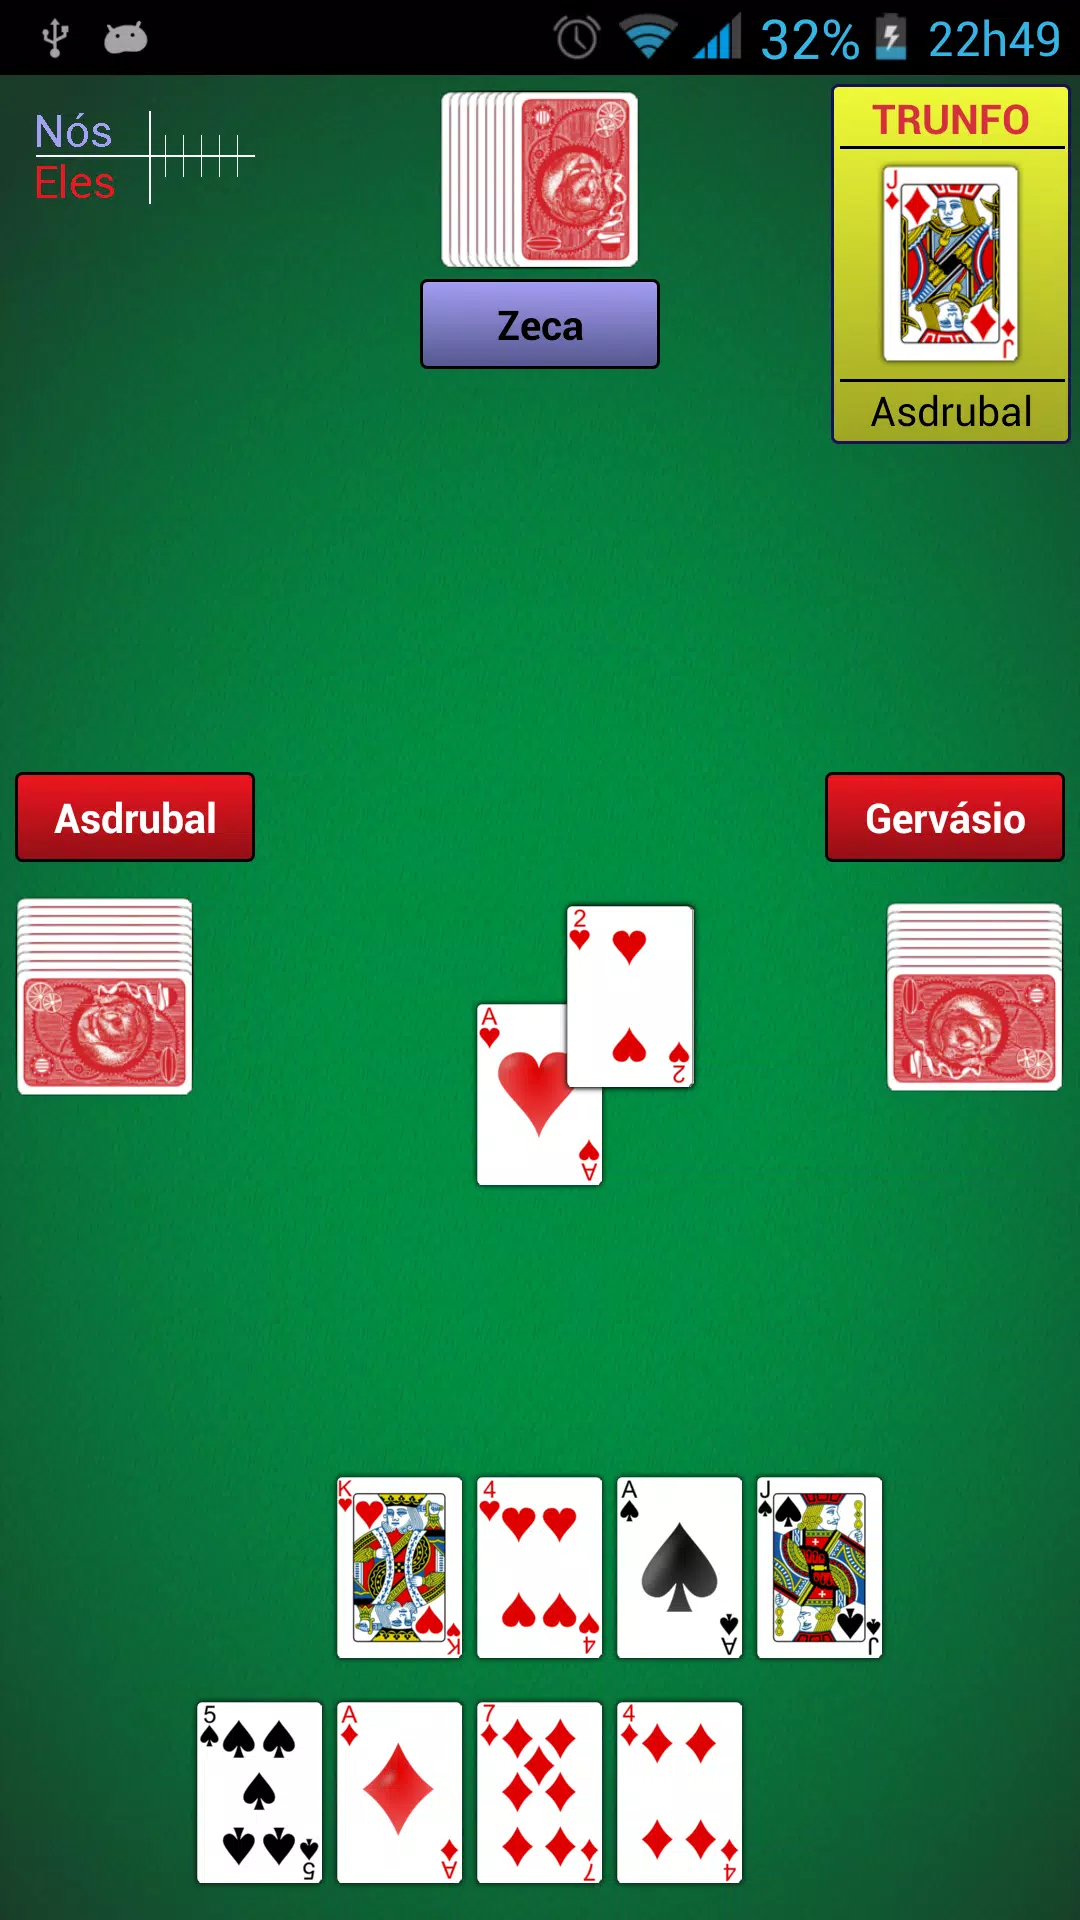 Jogos de cartas: buraco, sueca e clássicos do baralho para celular